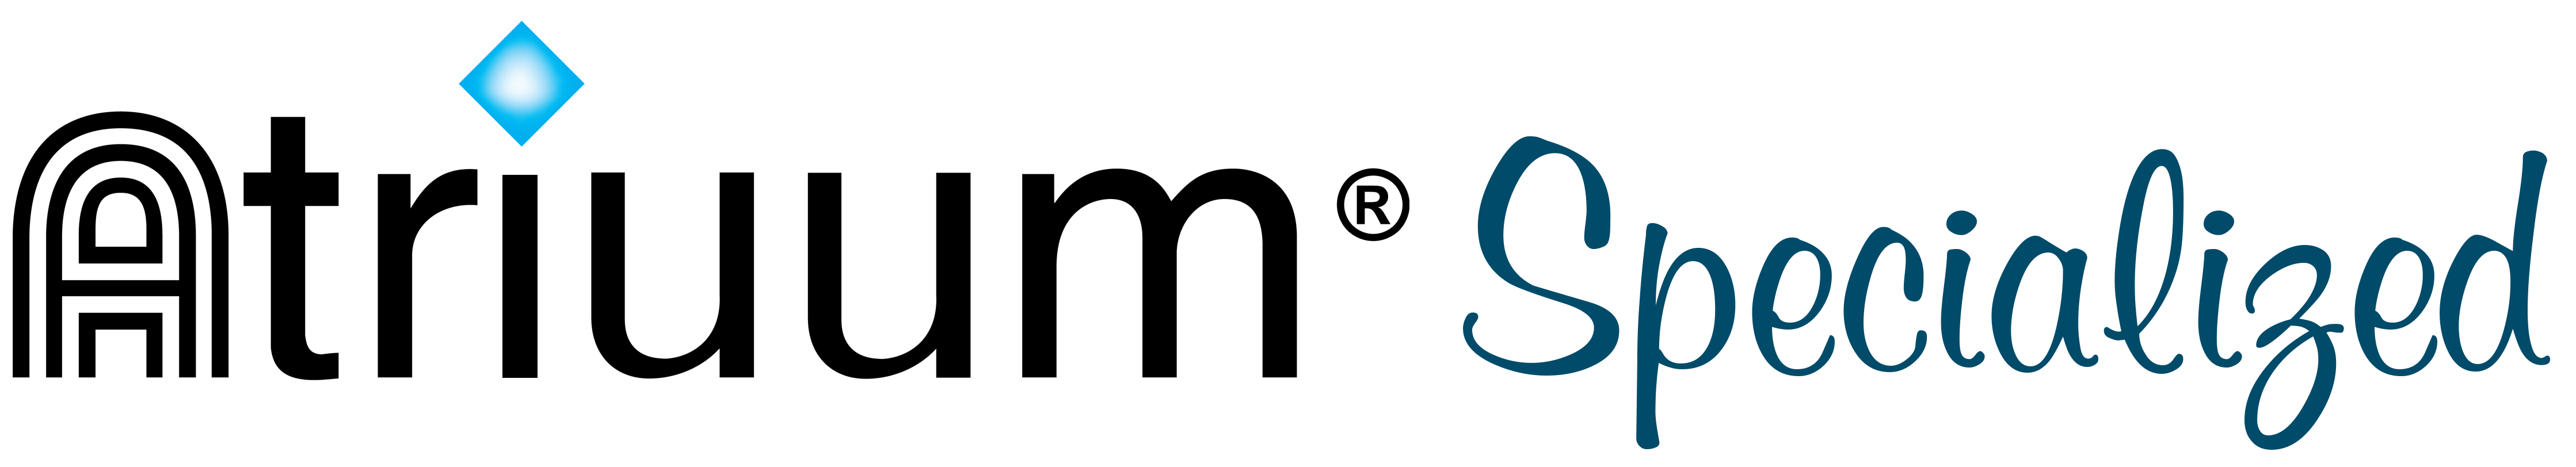 Atriuum Logo for Specialized